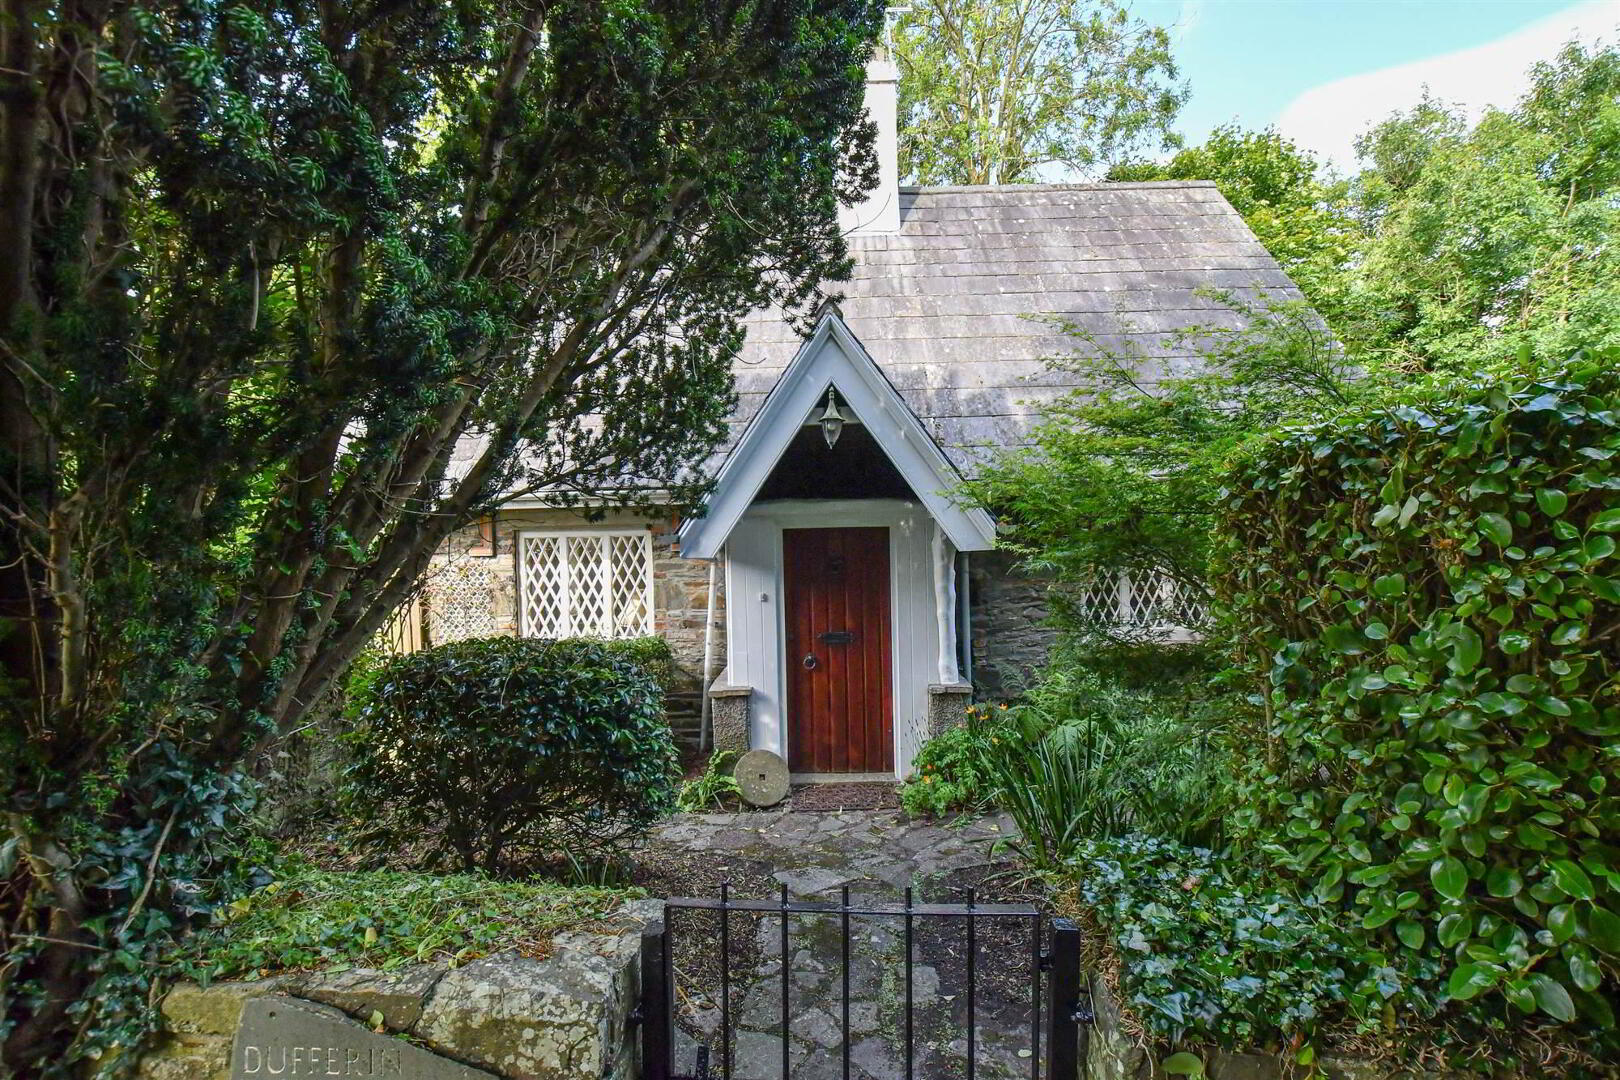 Dufferin Lodge, 35 Downpatrick Road